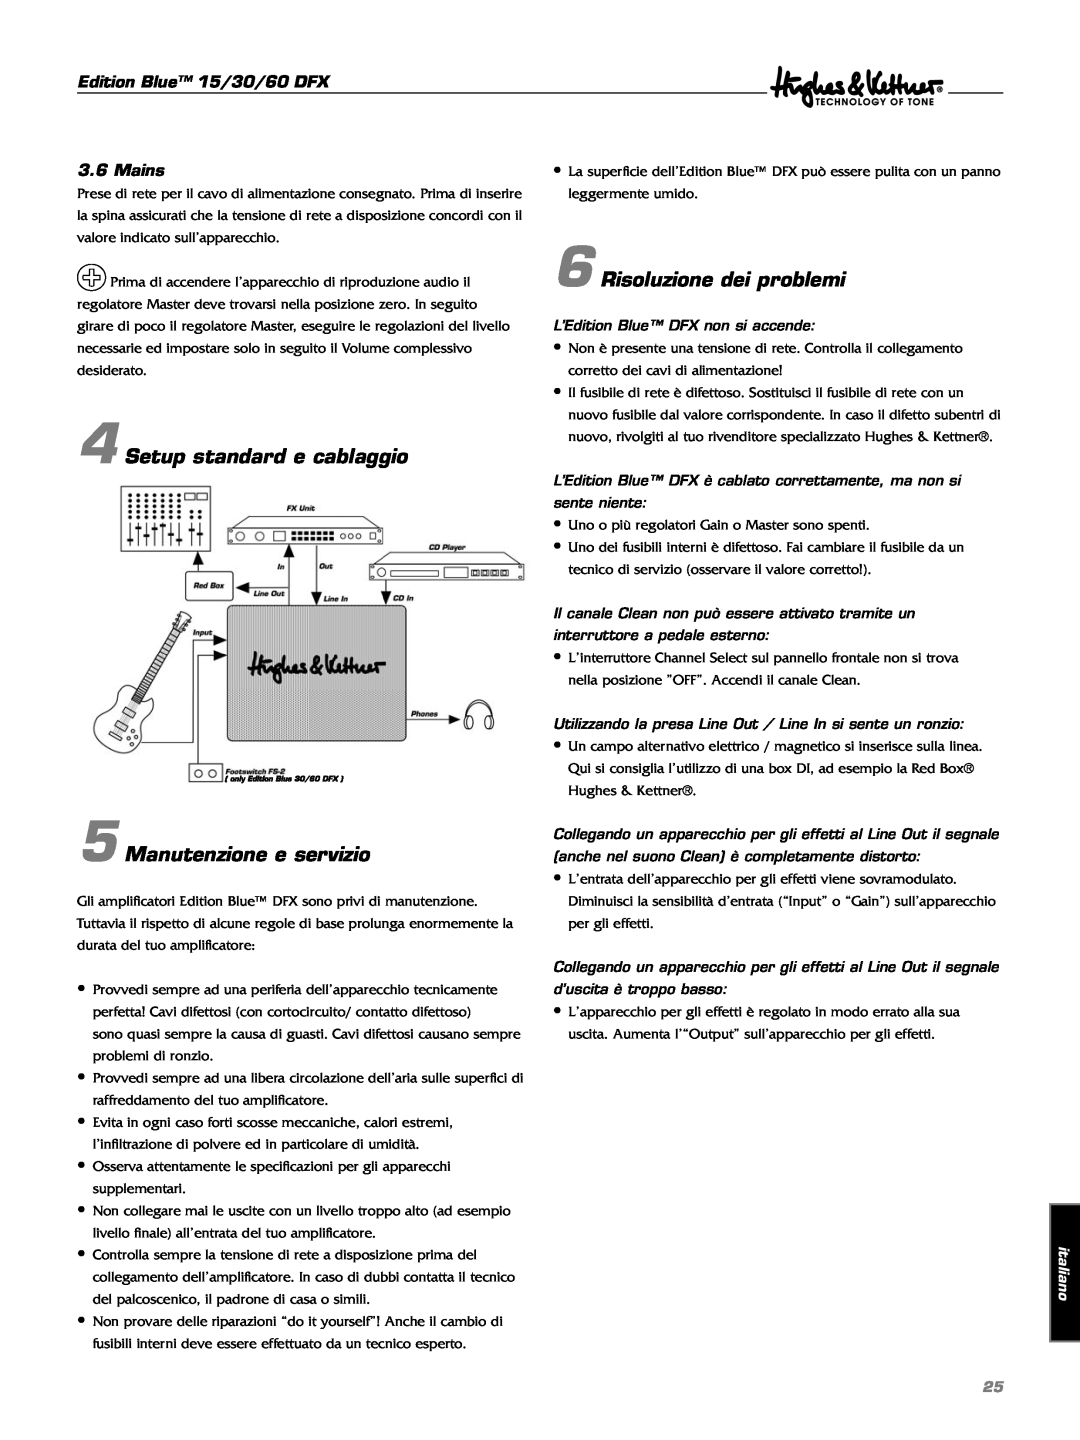 Hughes & Kettner DFX manual Risoluzione dei problemi, Setup standard e cablaggio, Manutenzione e servizio, italiano 